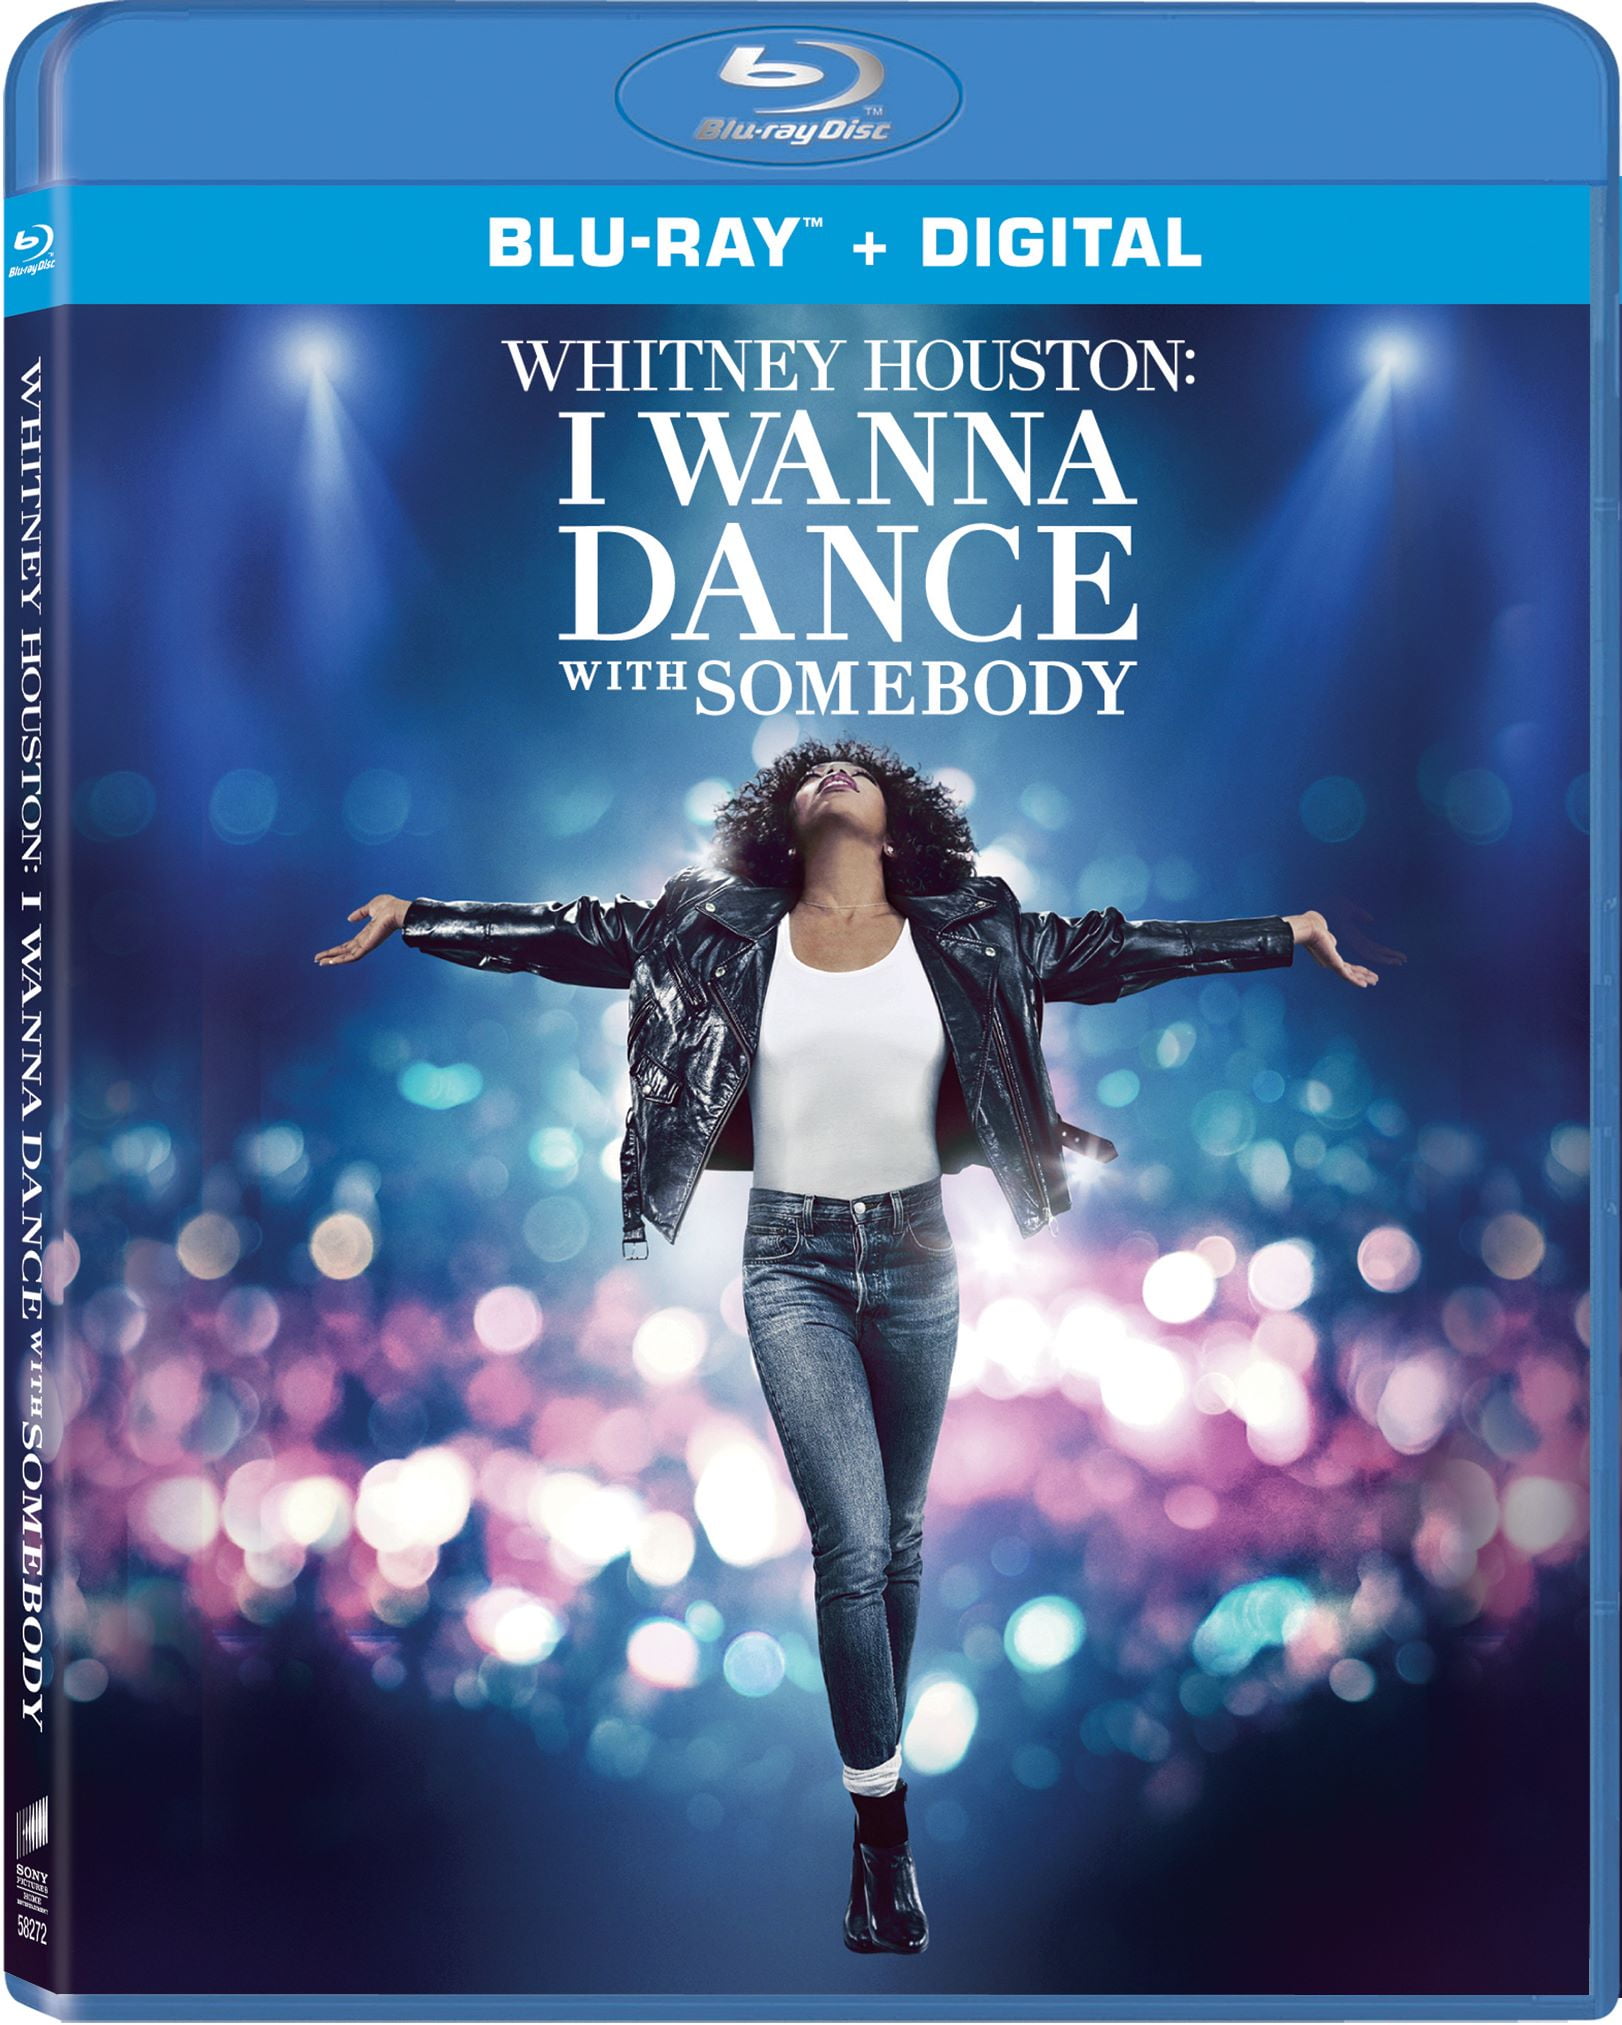 Whitney Houston: I Wanna Dance with Somebody (Blu-Ray + Digital Copy)